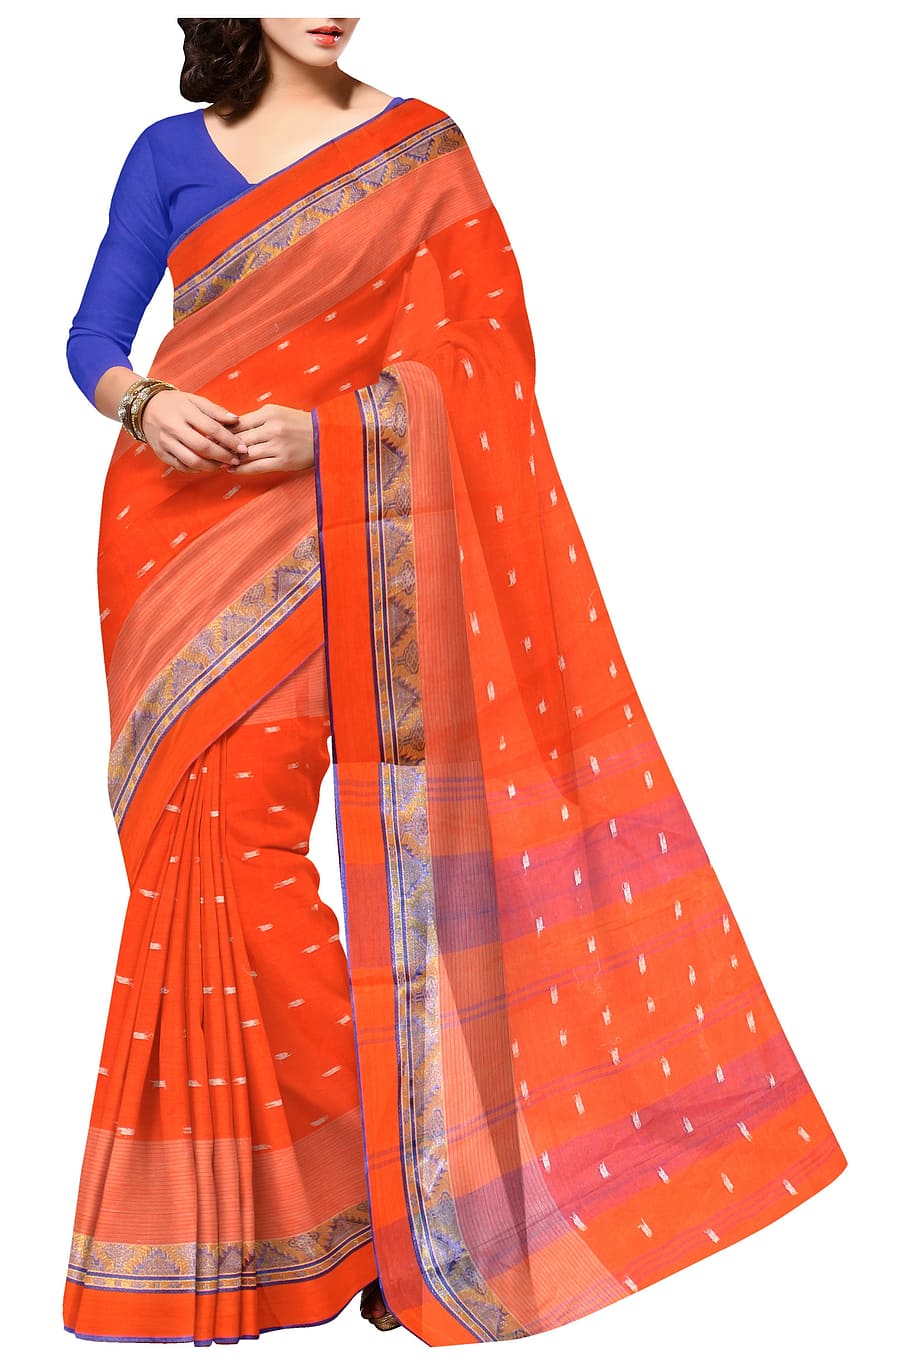 wanita, oranye, biru, gaun saree, Saree, India, Etnis, Pakaian, Mode, sutra